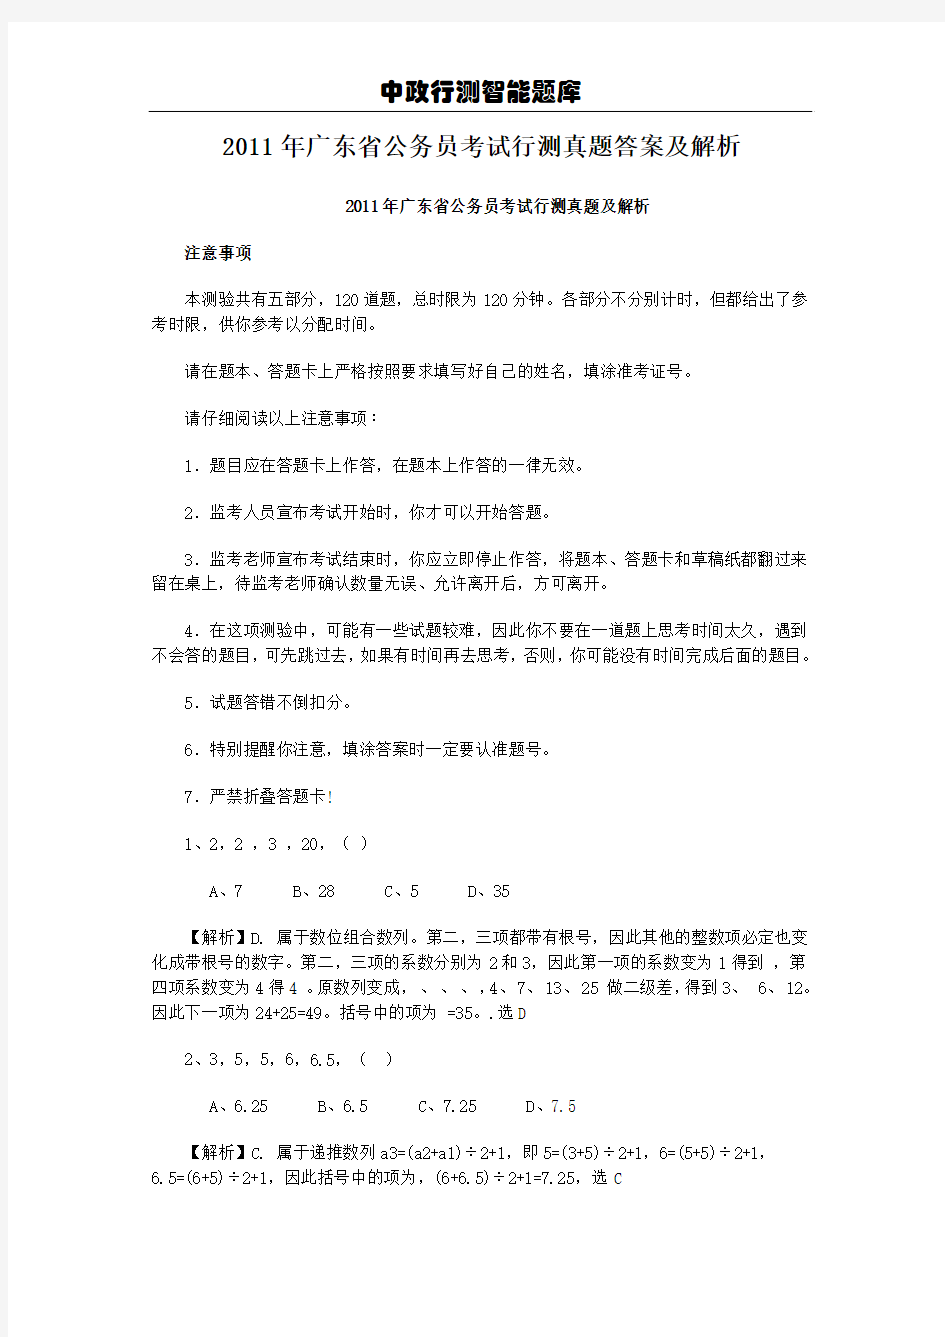 2011年广东省公务员考试行测真题答案及解析[1]